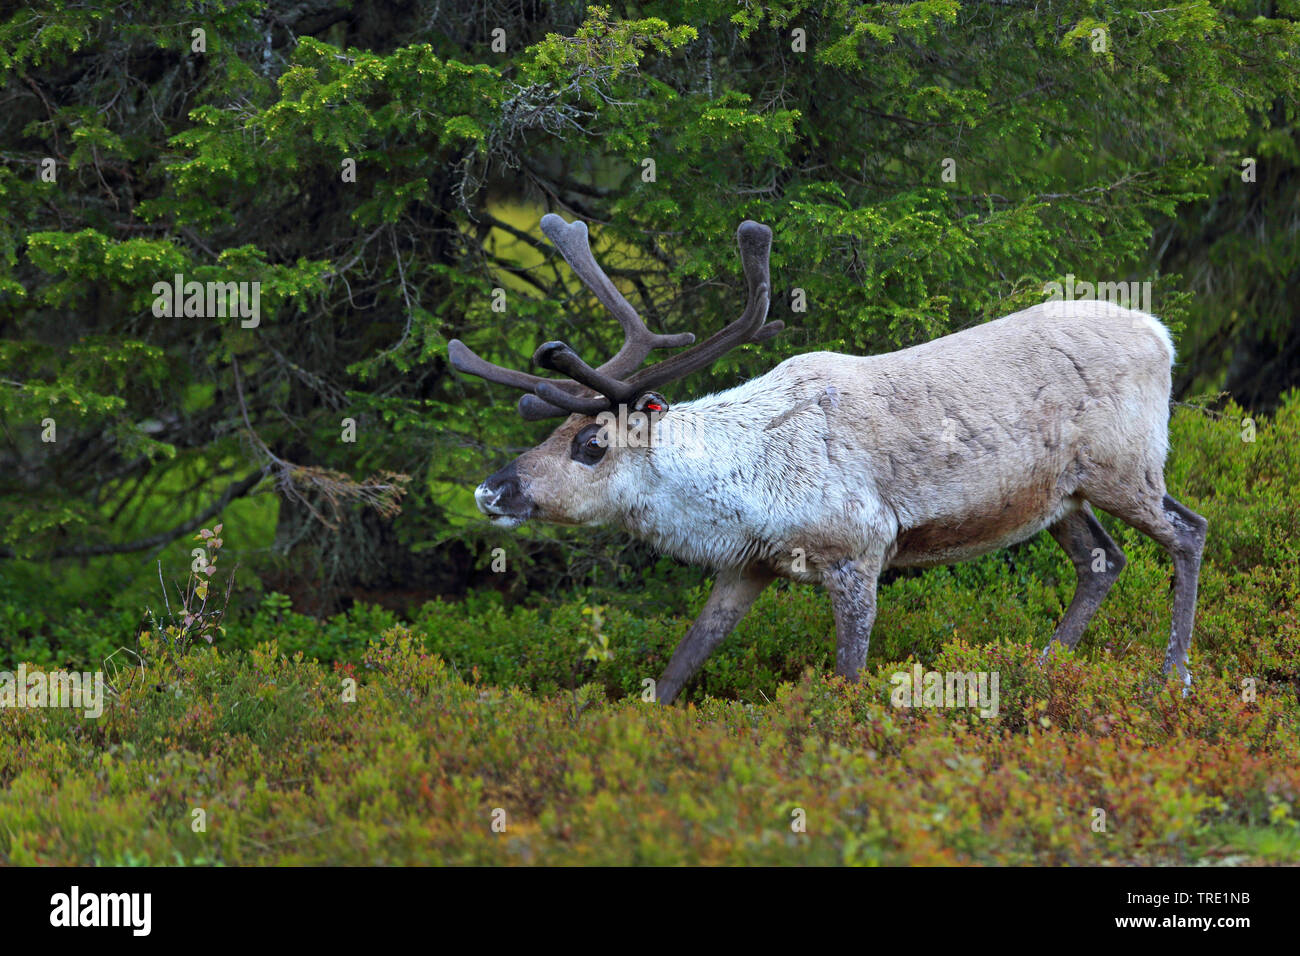 Los renos, el caribú (Rangifer tarandus), renos bull caminando por el bosque de coníferas, vista lateral, Finlandia, Pallas Yllaestunturi Parque Nacional Foto de stock